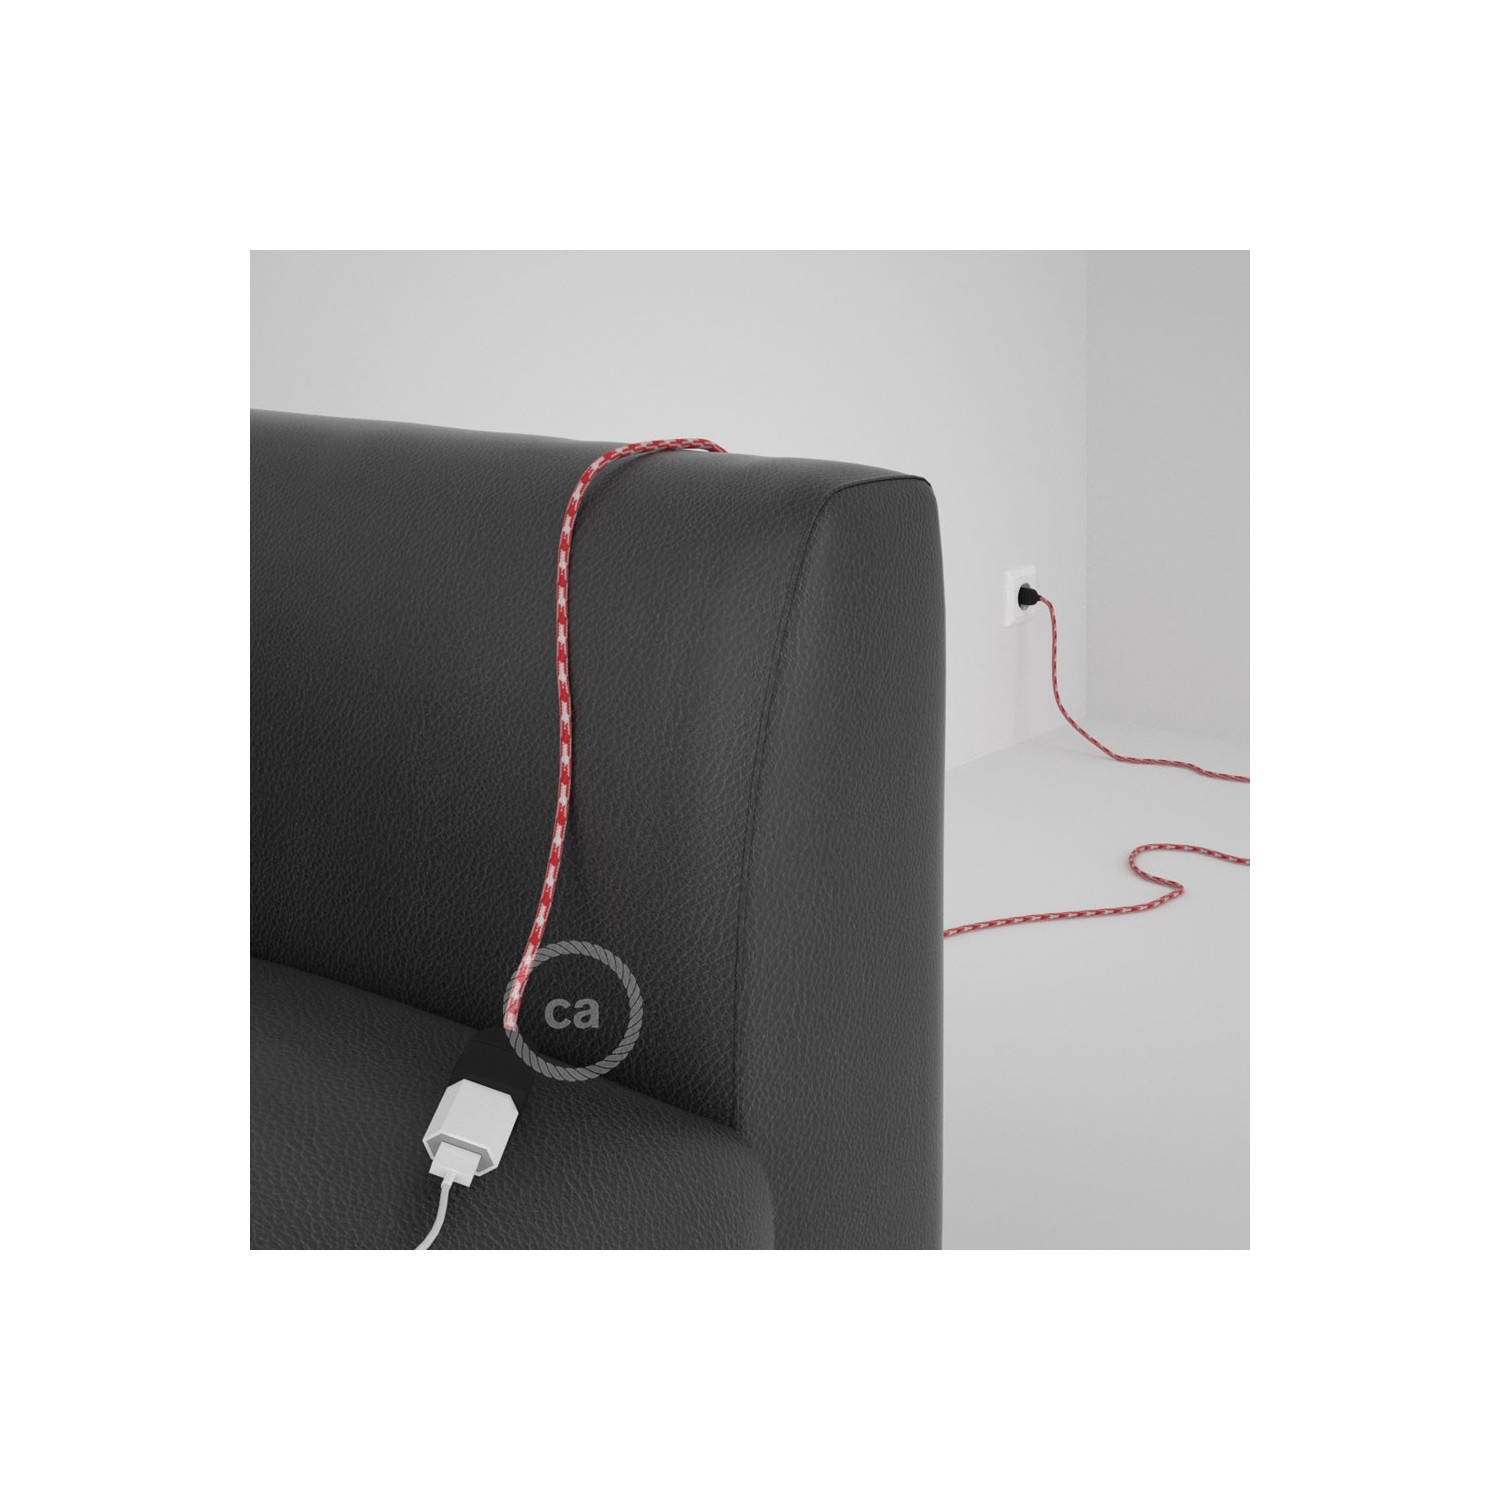 Rallonge électrique avec câble textile RP09 Effet Soie Bicolore Blanc-Rouge 2P 10A Made in Italy.